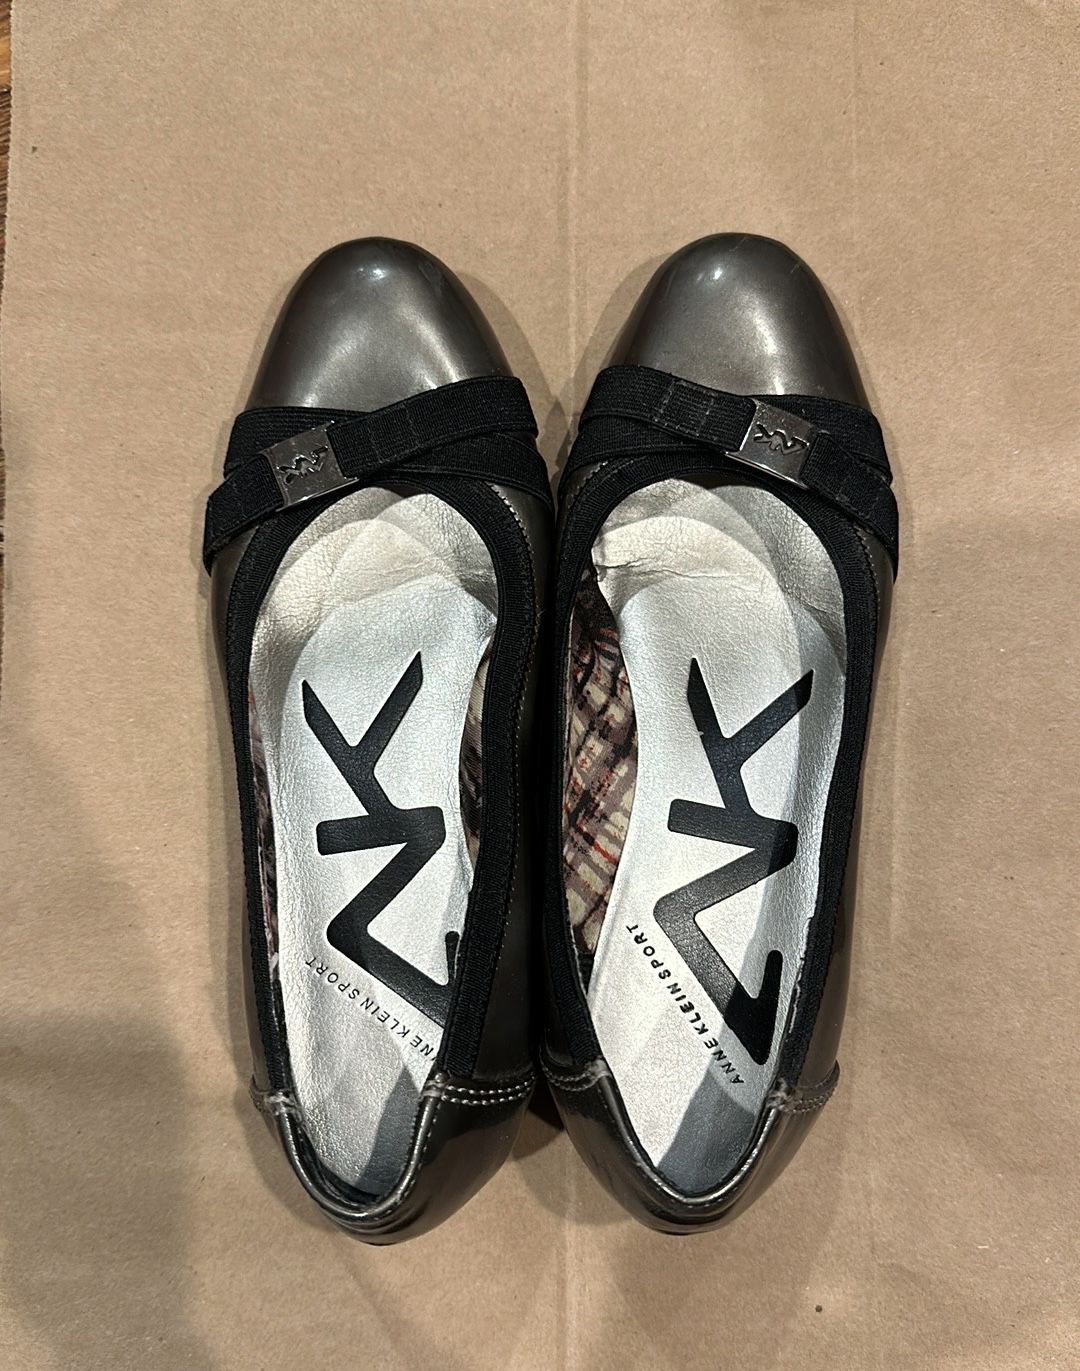 Shiny gray metallic wedge heels (sz 6)